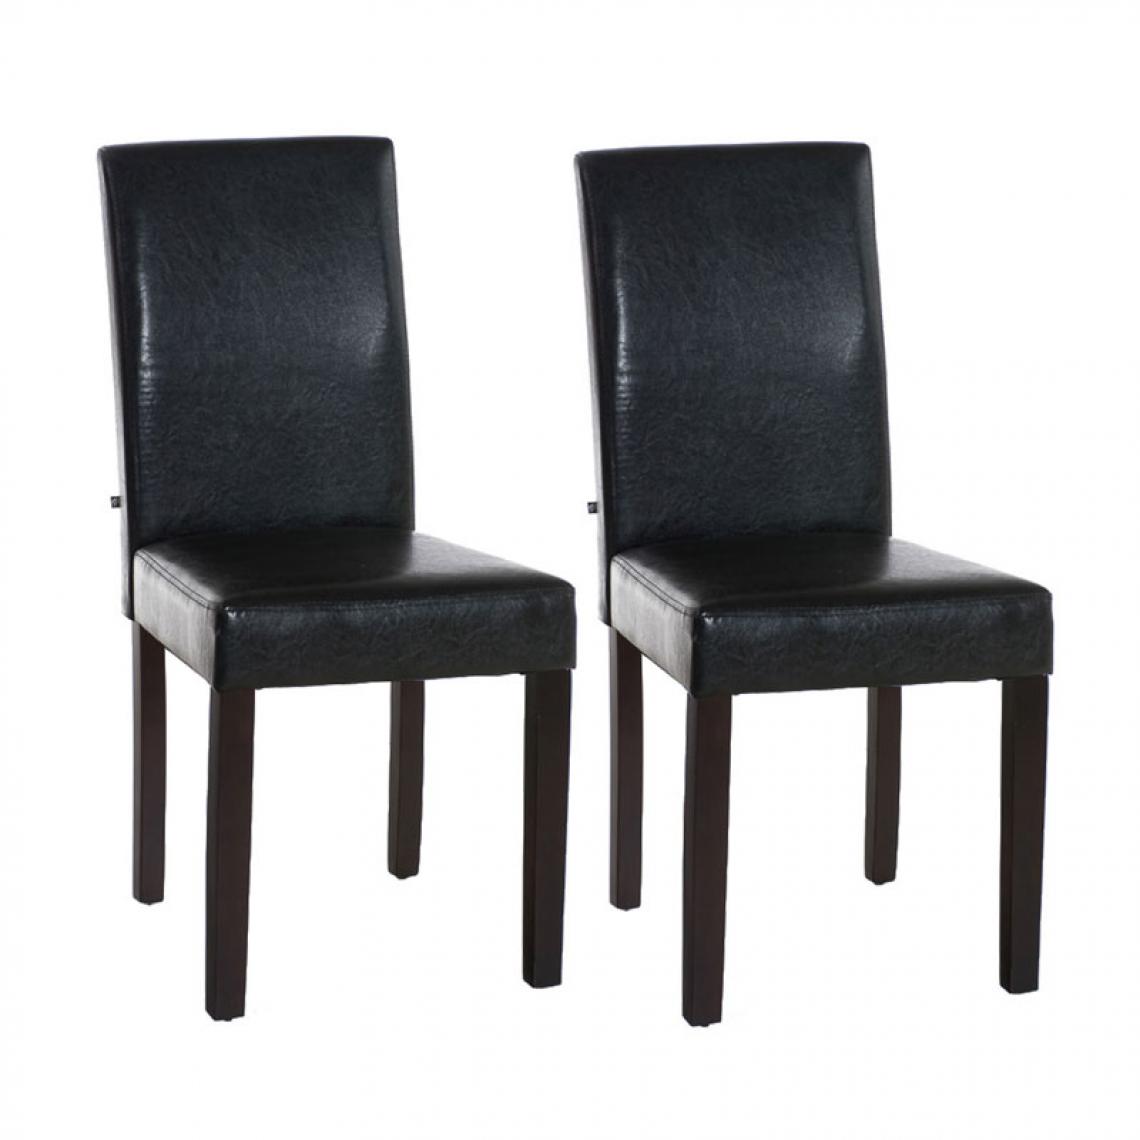 Icaverne - Joli Lot de 2 chaises de salle à manger serie Rabat marron foncé couleur marron - Chaises